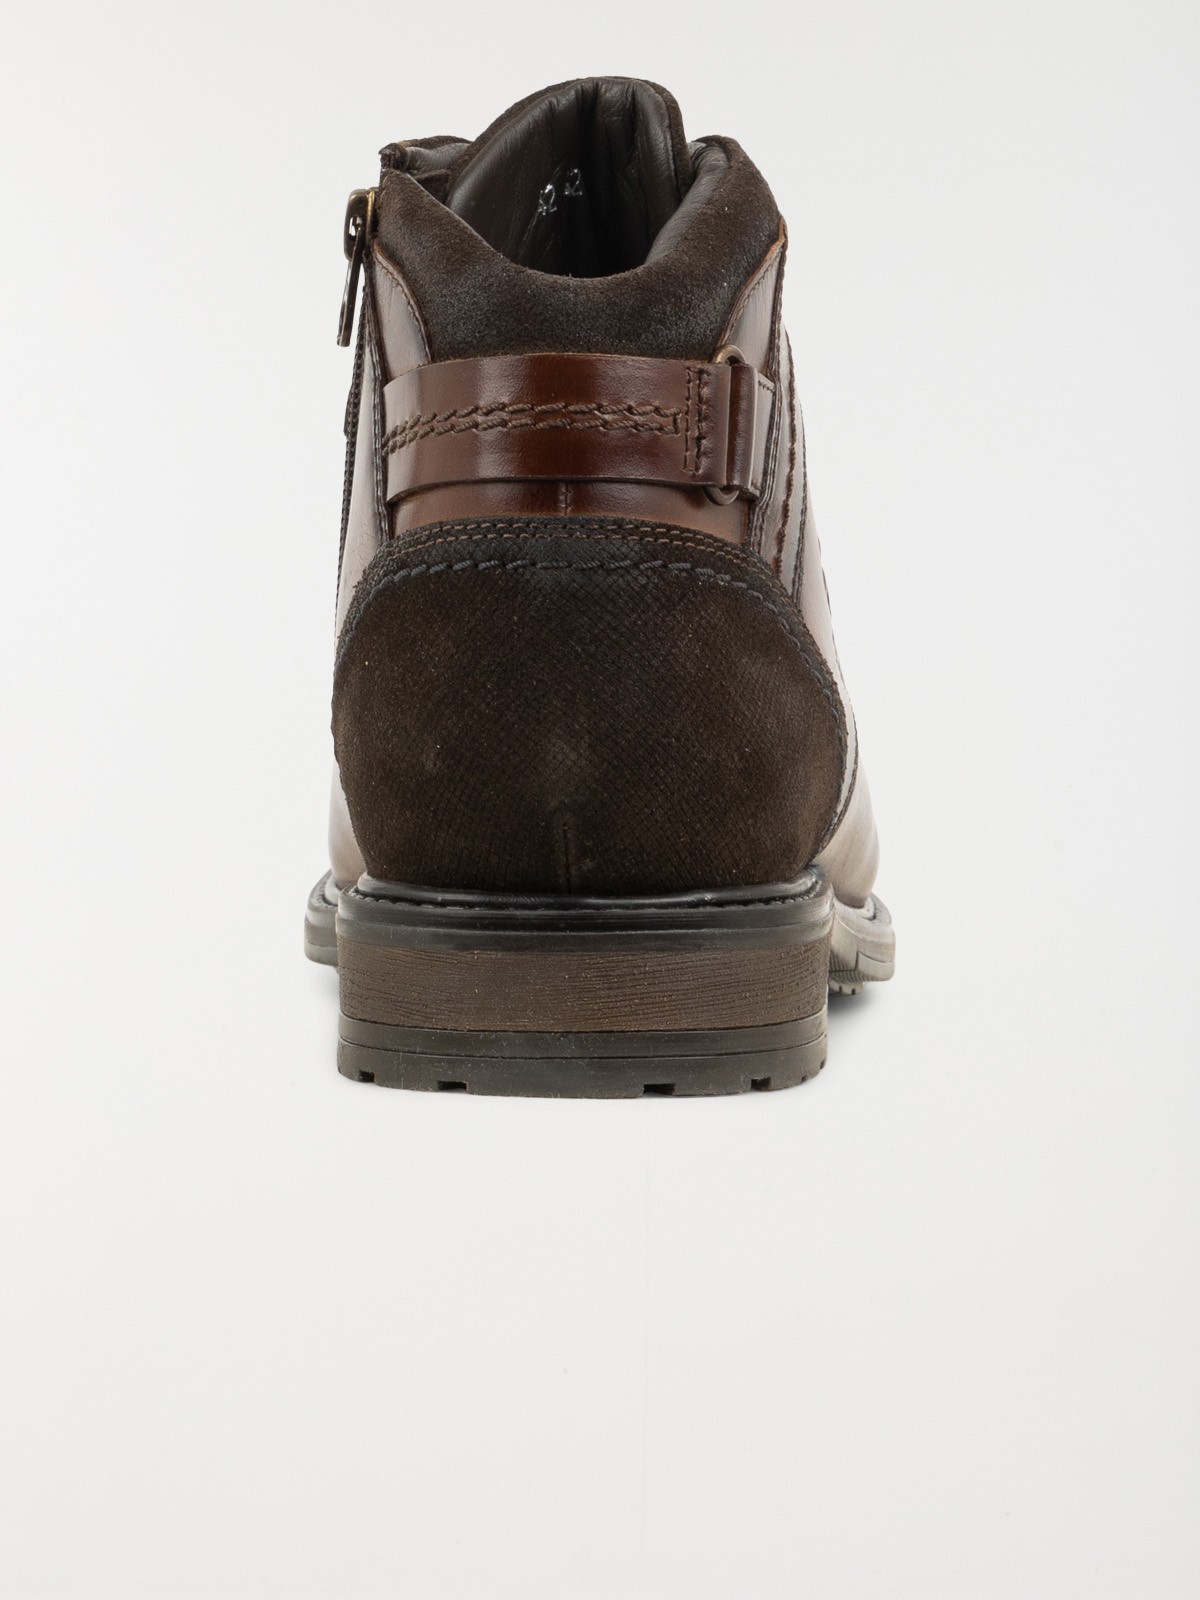 Chaussure de ville marron homme (41-46) - DistriCenter